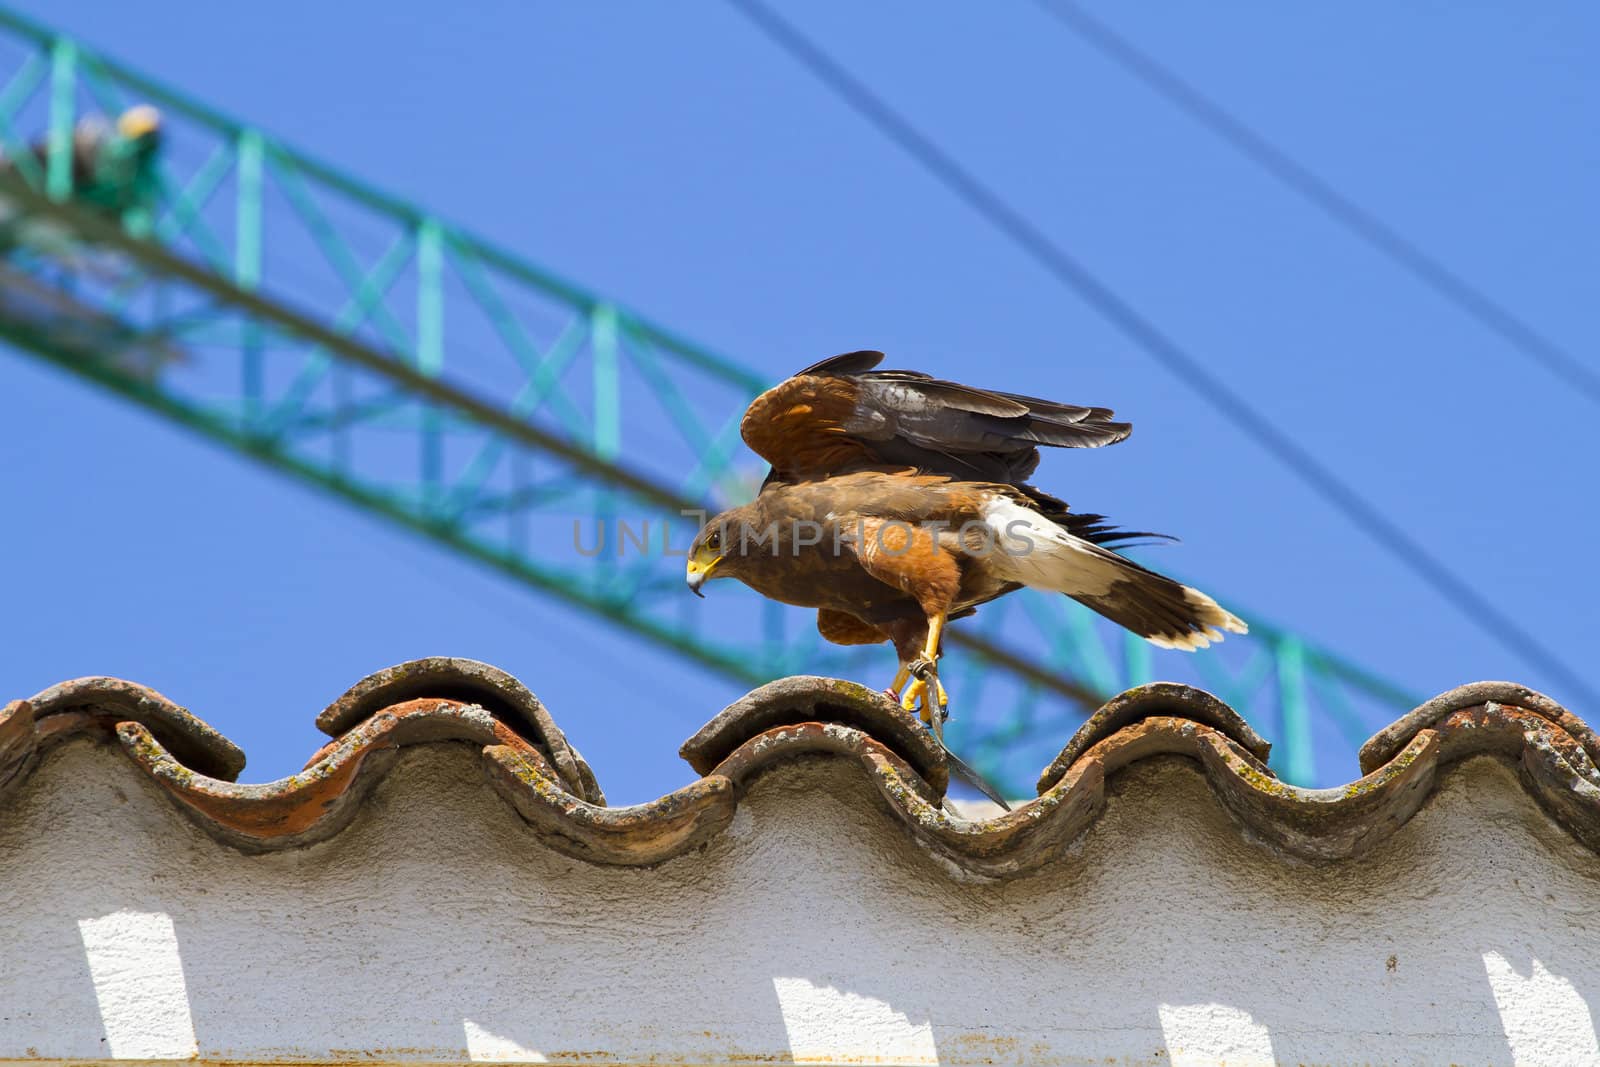 display of birds of prey, golden eagle by FernandoCortes